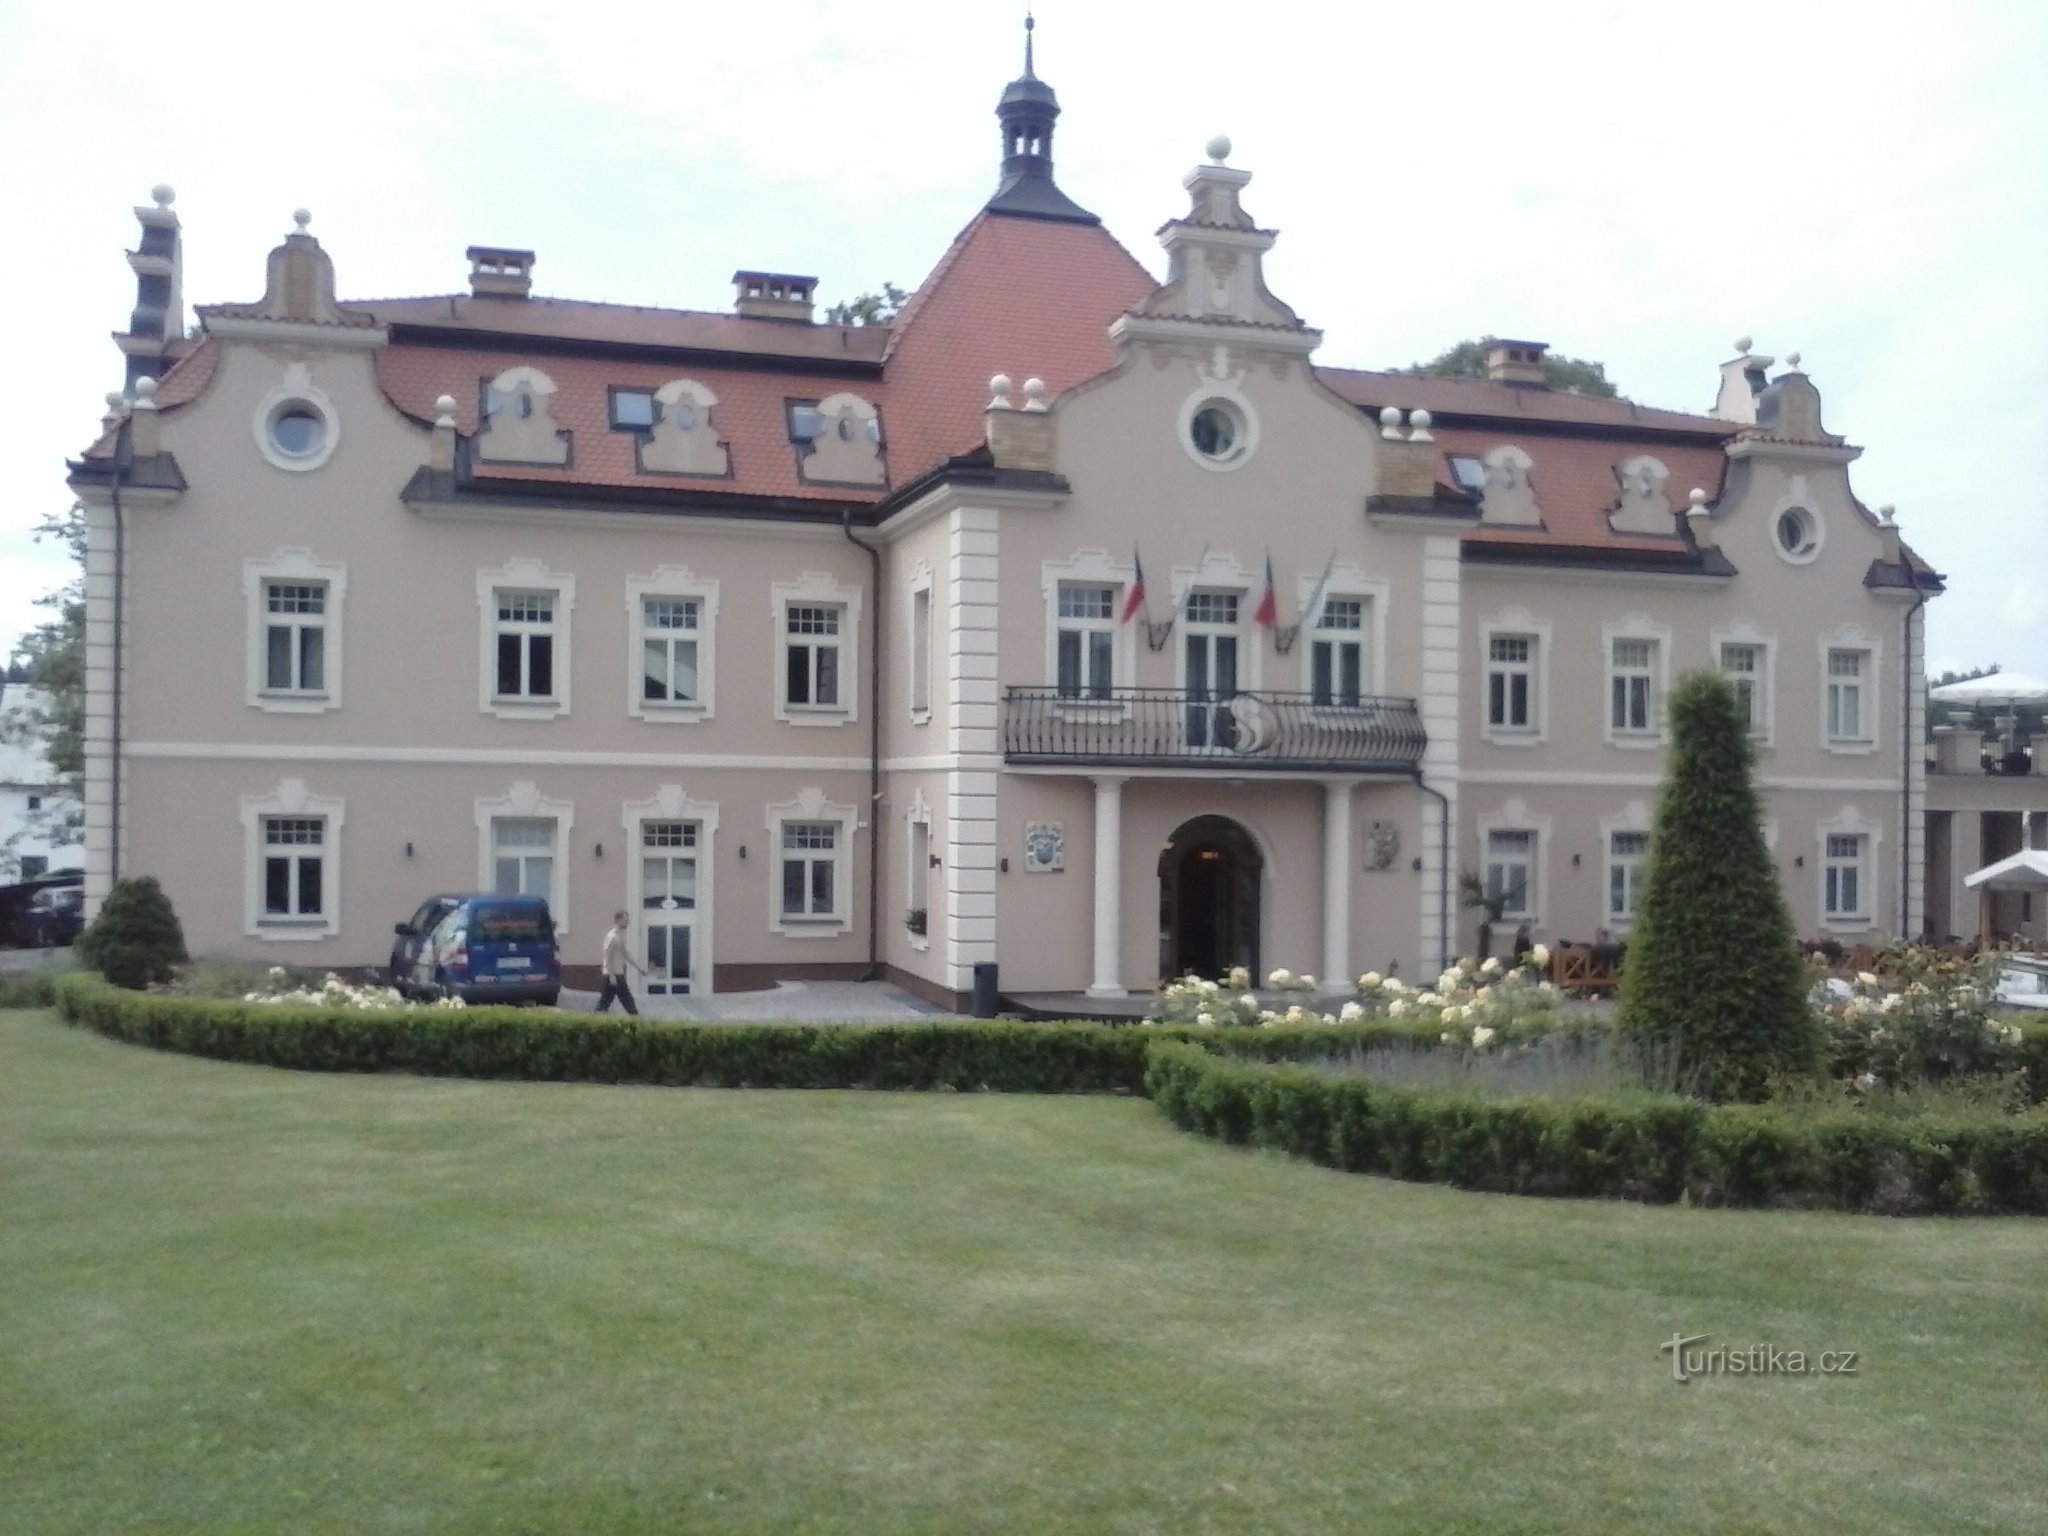 Obecny zamek Berchtold